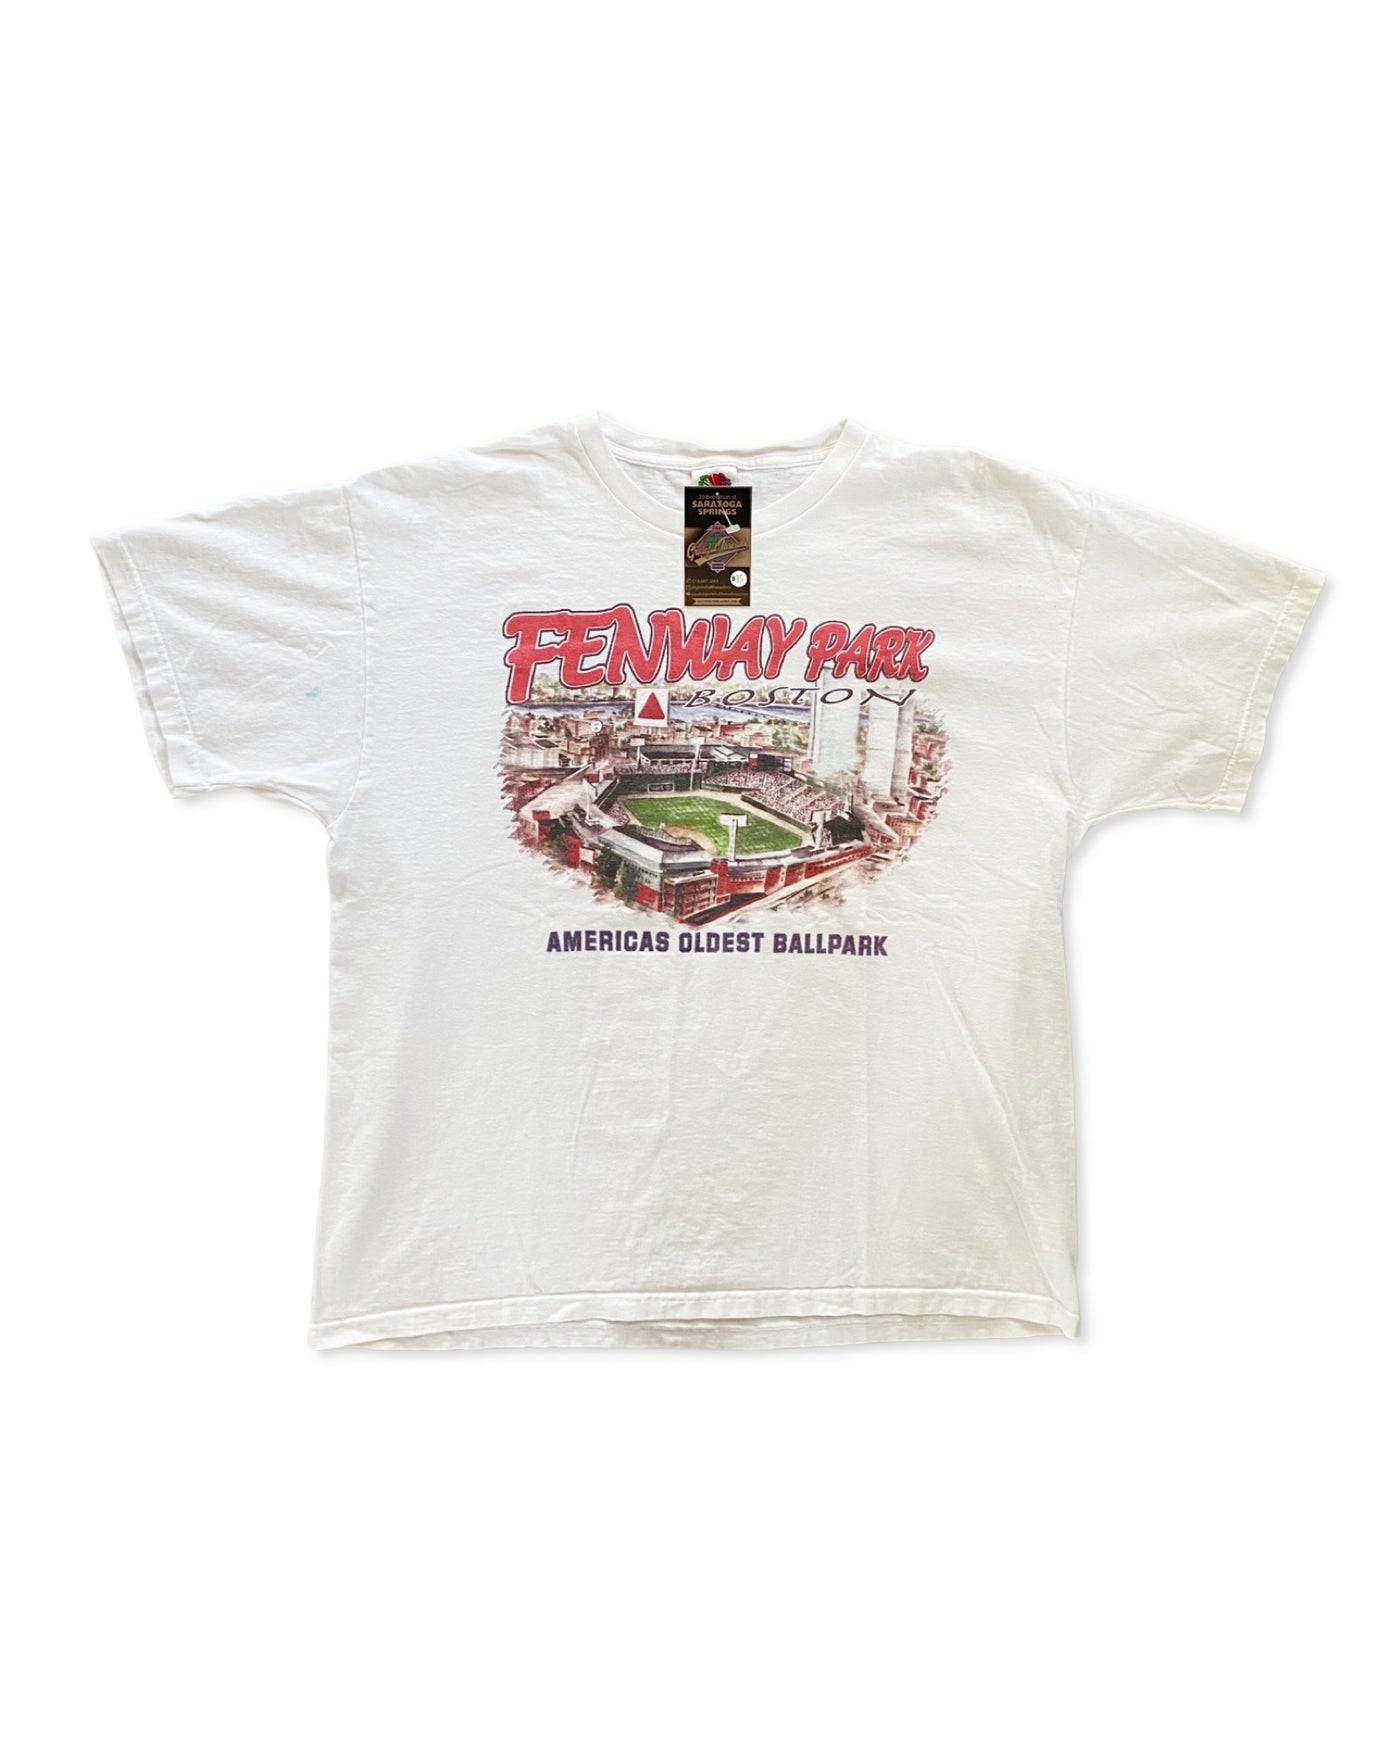 Vintage Fenway Park T-Shirt